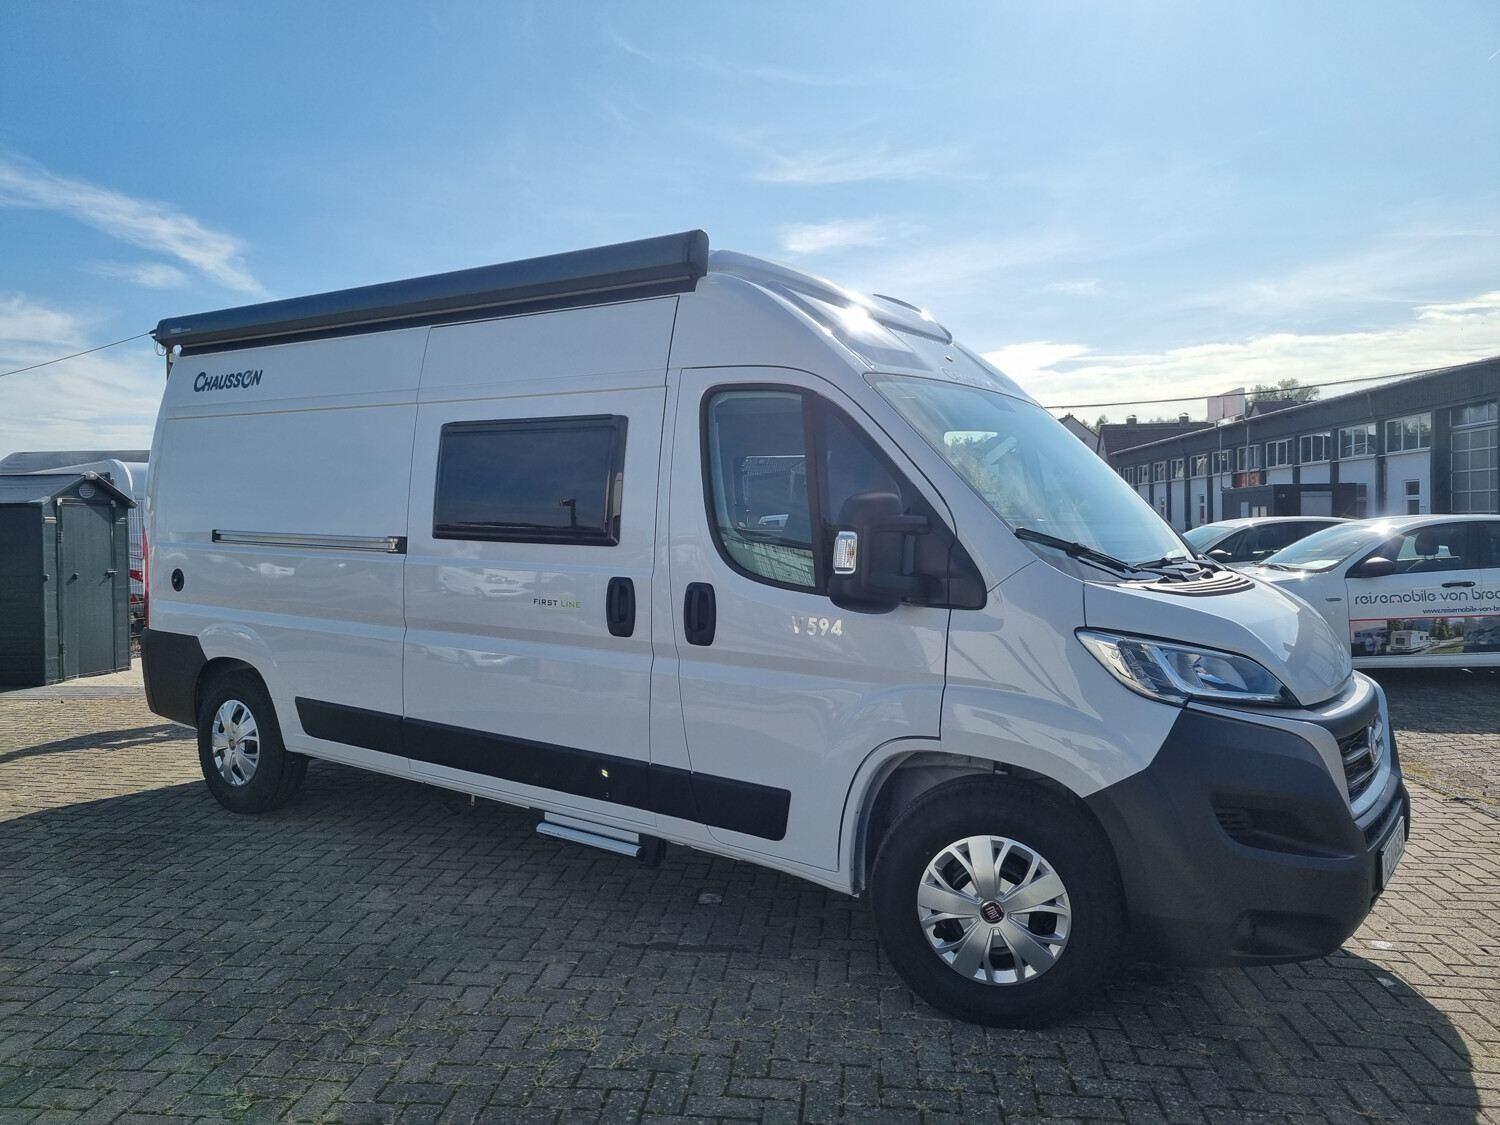 Wohnmobil 🚐 Chausson Van First Line V594 kaufen